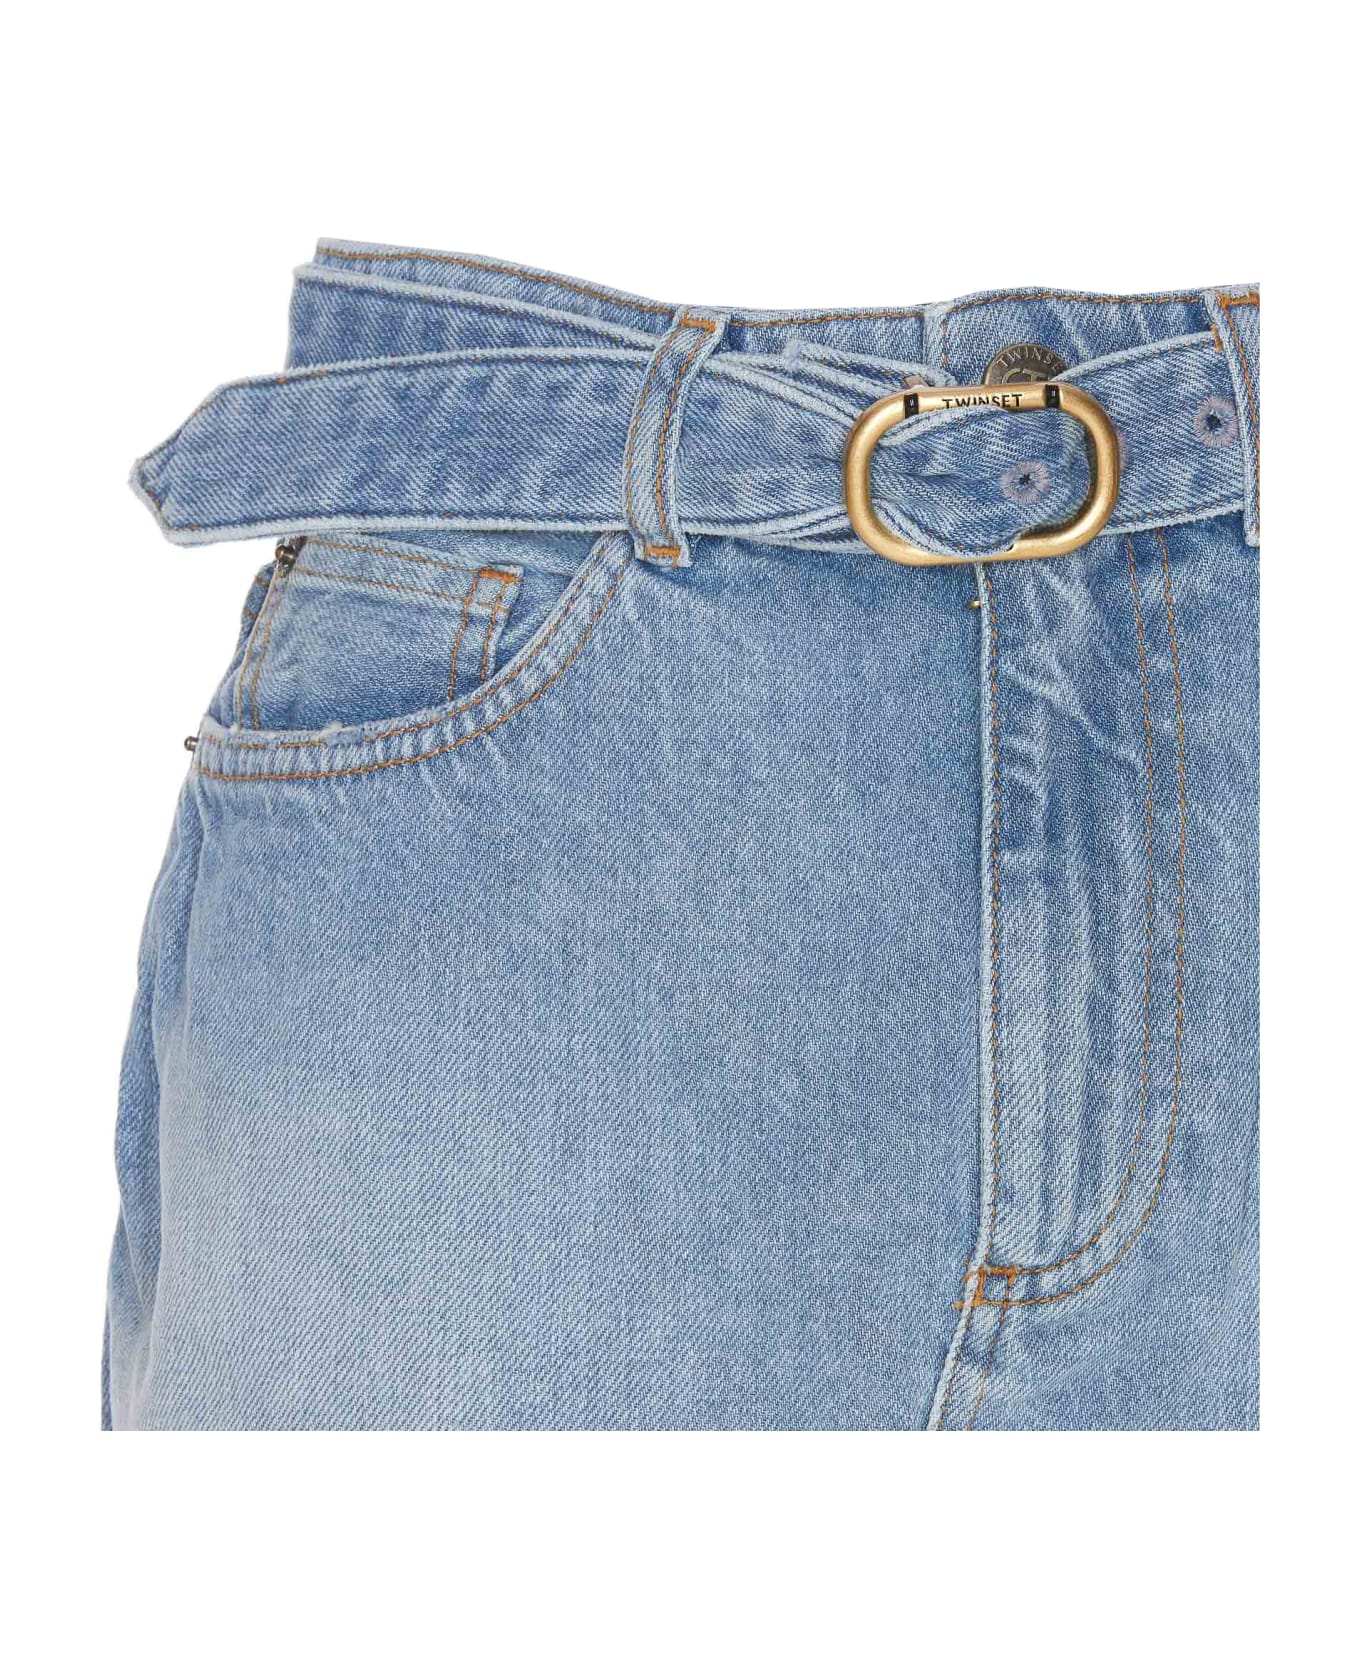 TwinSet Denim Mini Skirt With Oval T Belt - Denim